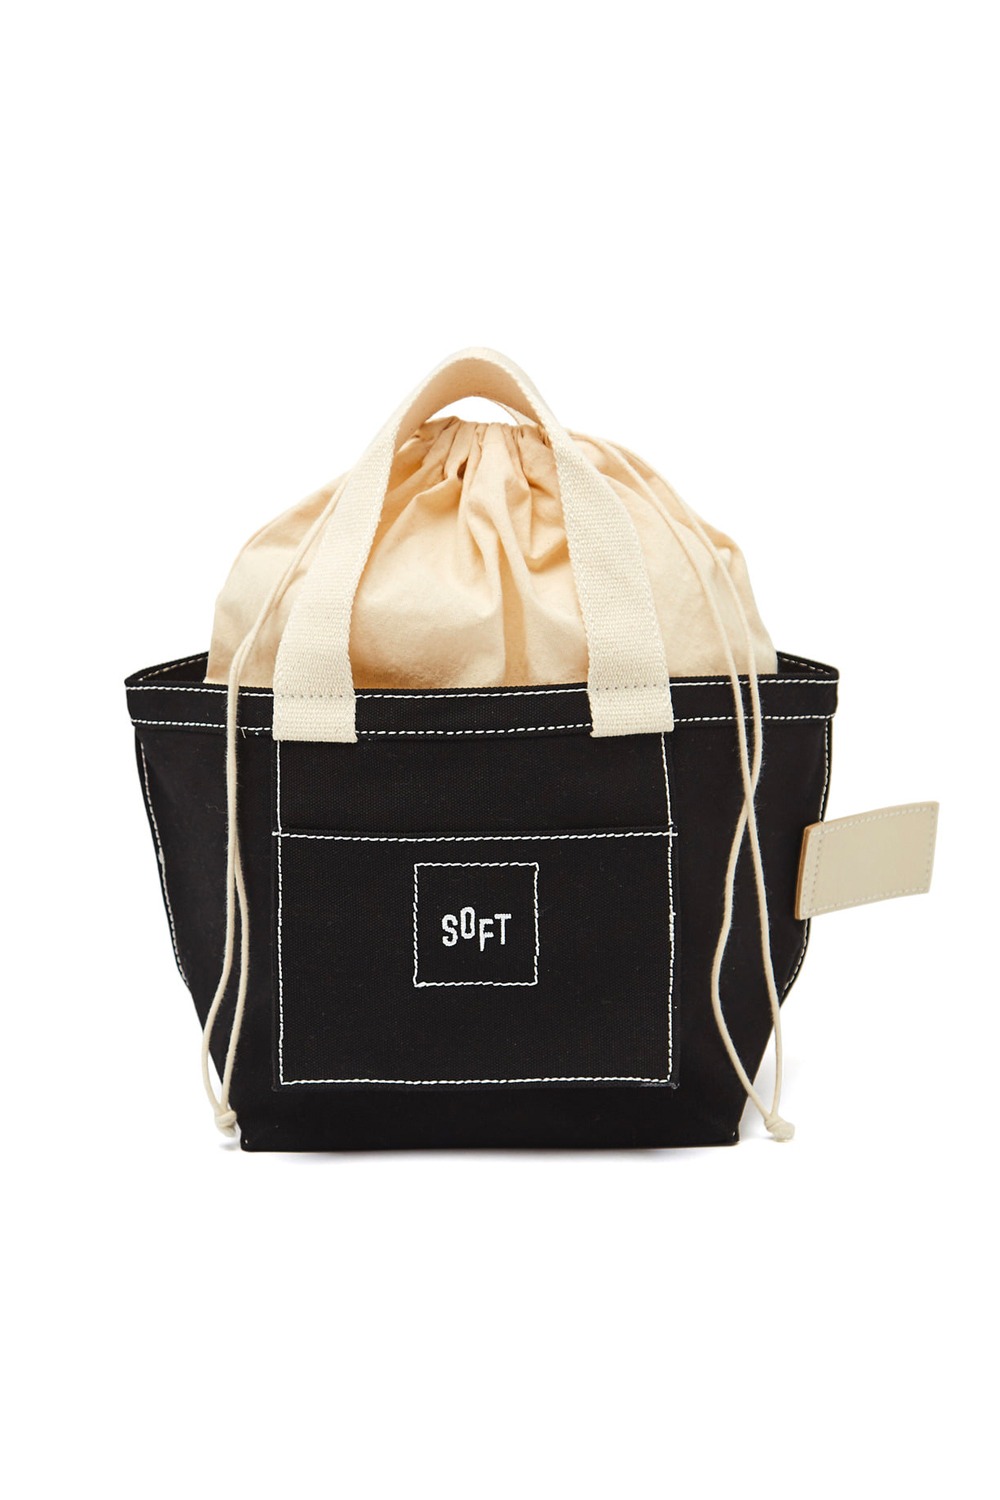 10th_soft market bag - black / white stitches eco bag